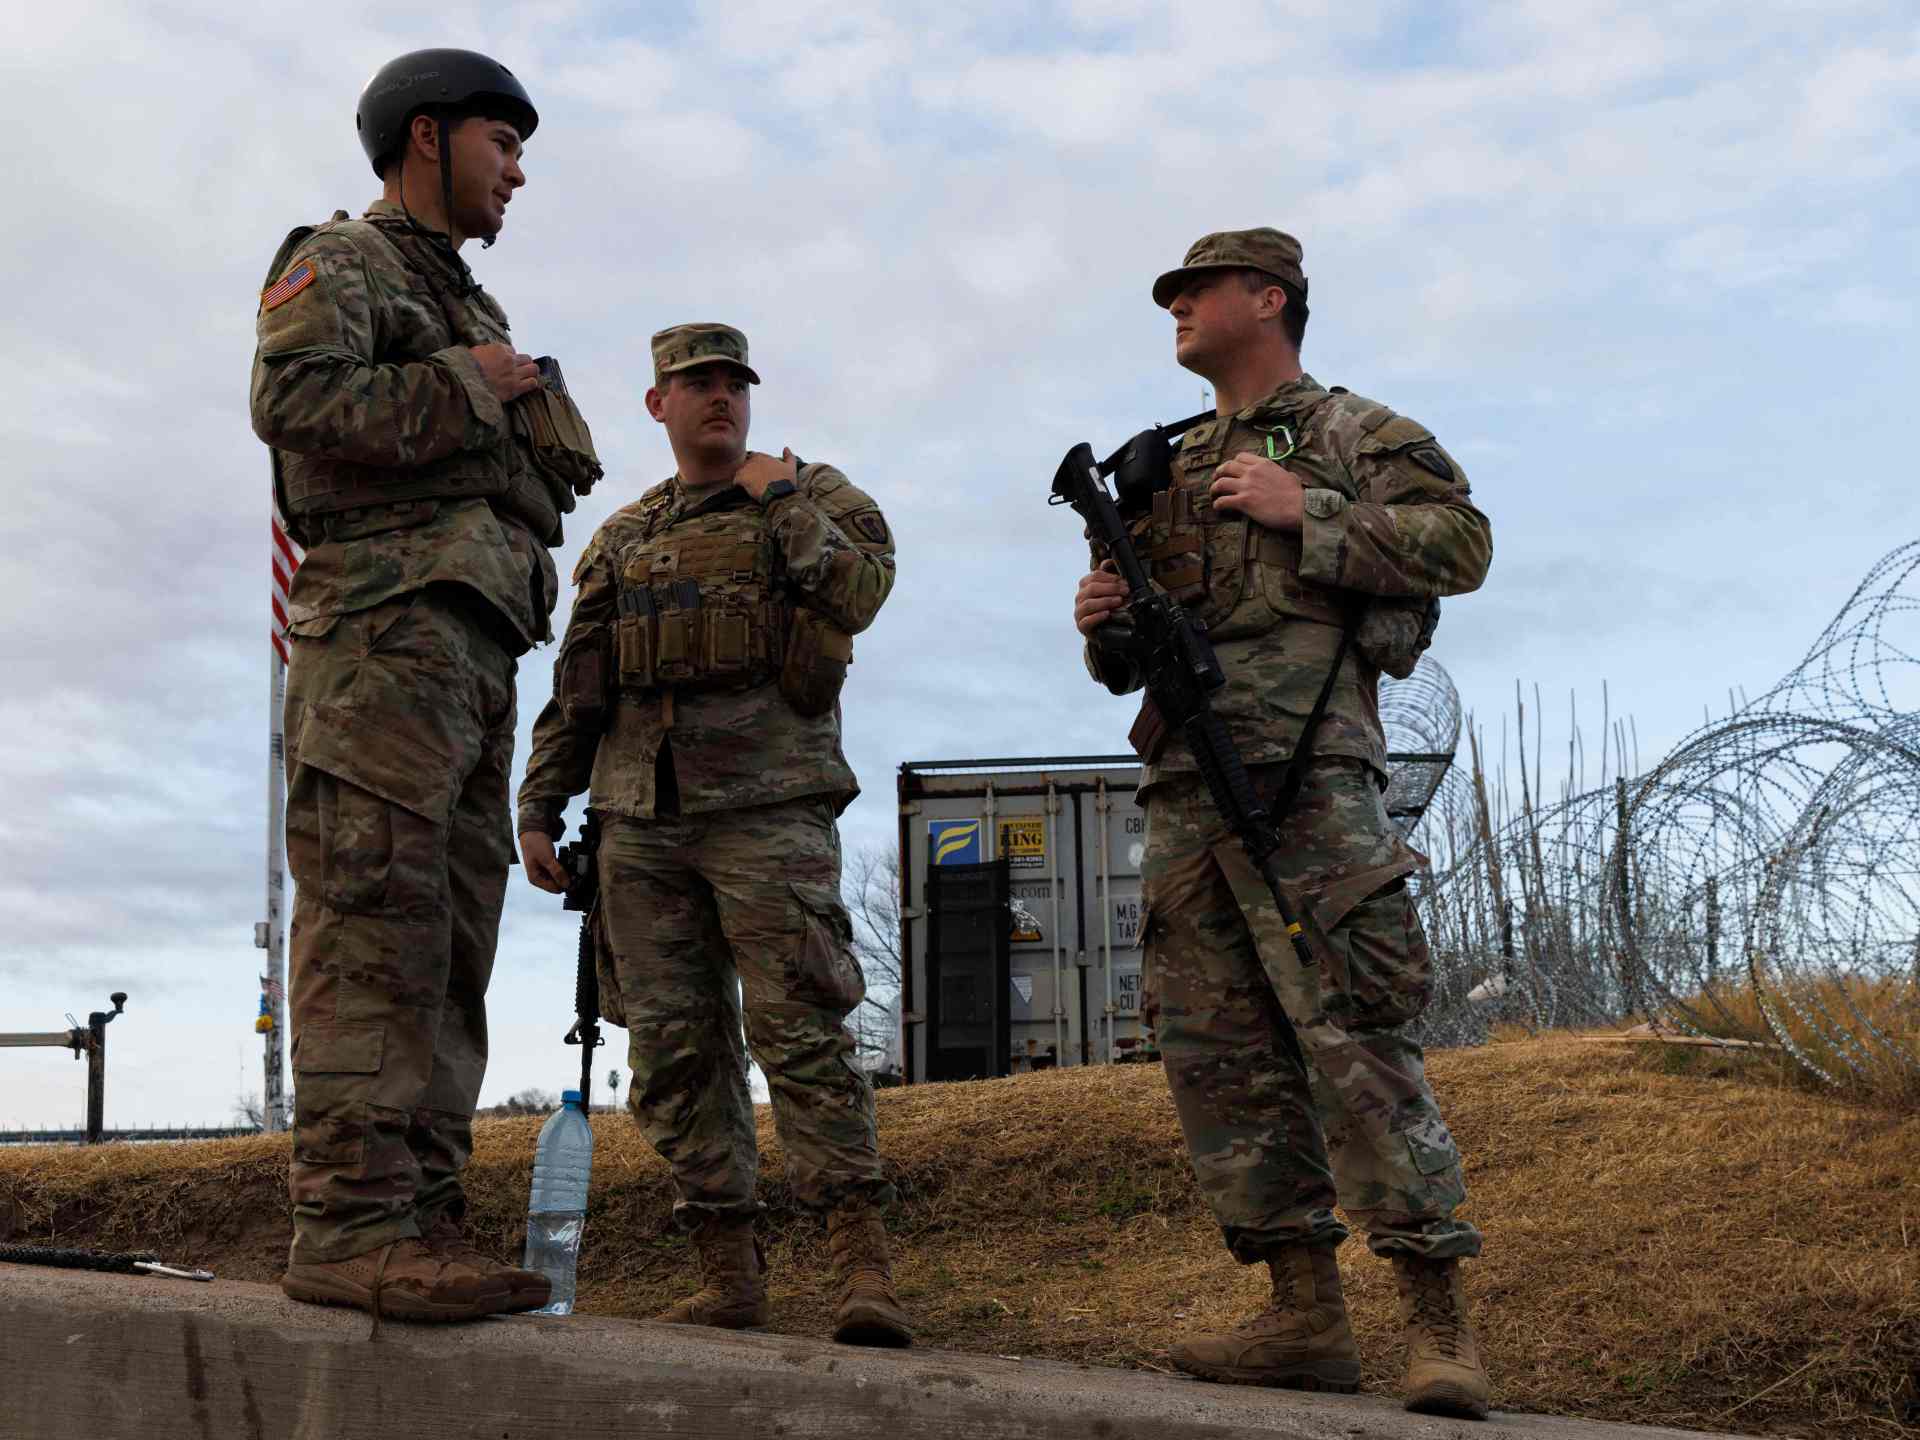 تكساس تبني قاعدة عسكرية لمواجهة تدفق المهاجرين | أخبار – البوكس نيوز